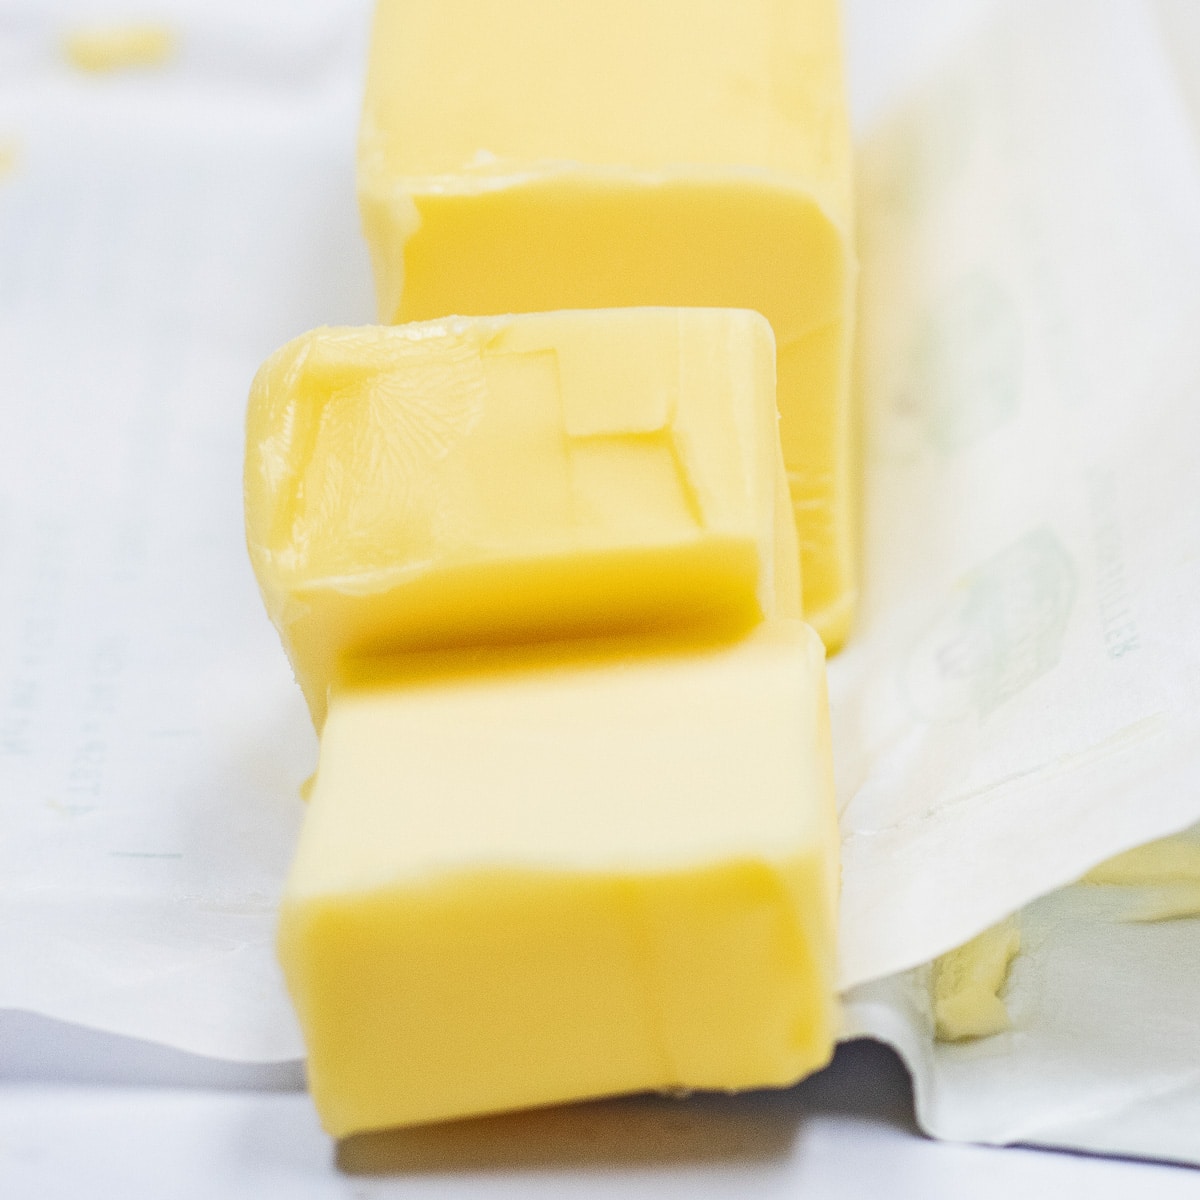 Meilleures options de substitut de beurre pour remplacer le beurre européen en tranches présenté ici.